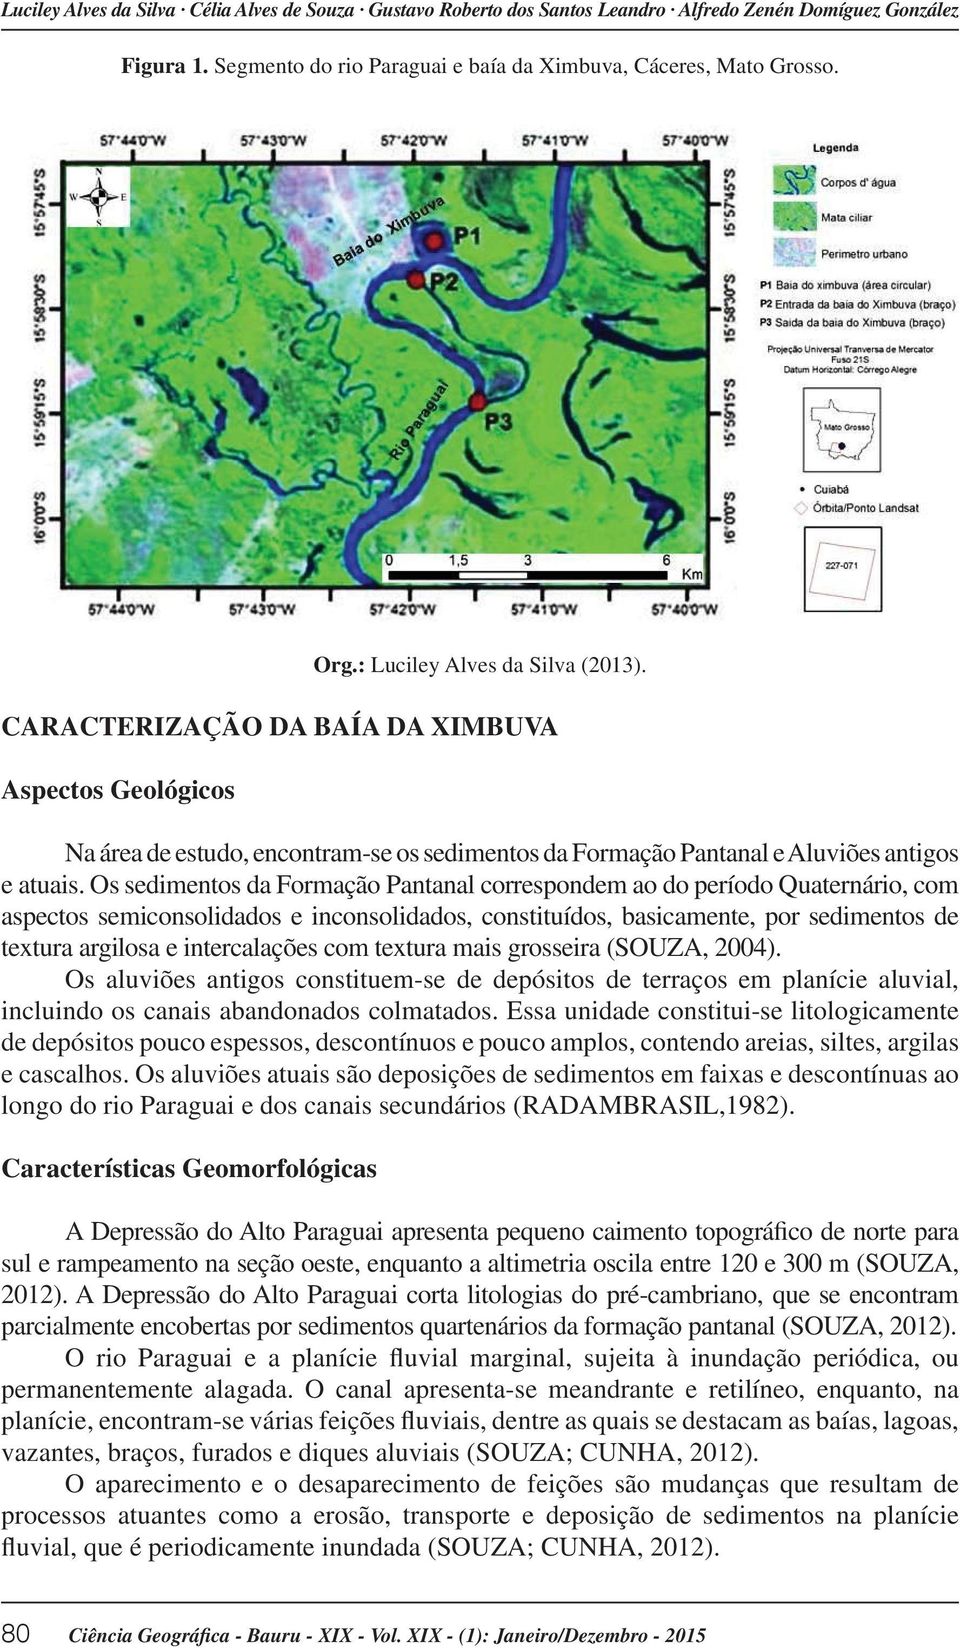 Os sedimentos da Formação Pantanal correspondem ao do período Quaternário, com aspectos semiconsolidados e inconsolidados, constituídos, basicamente, por sedimentos de textura argilosa e